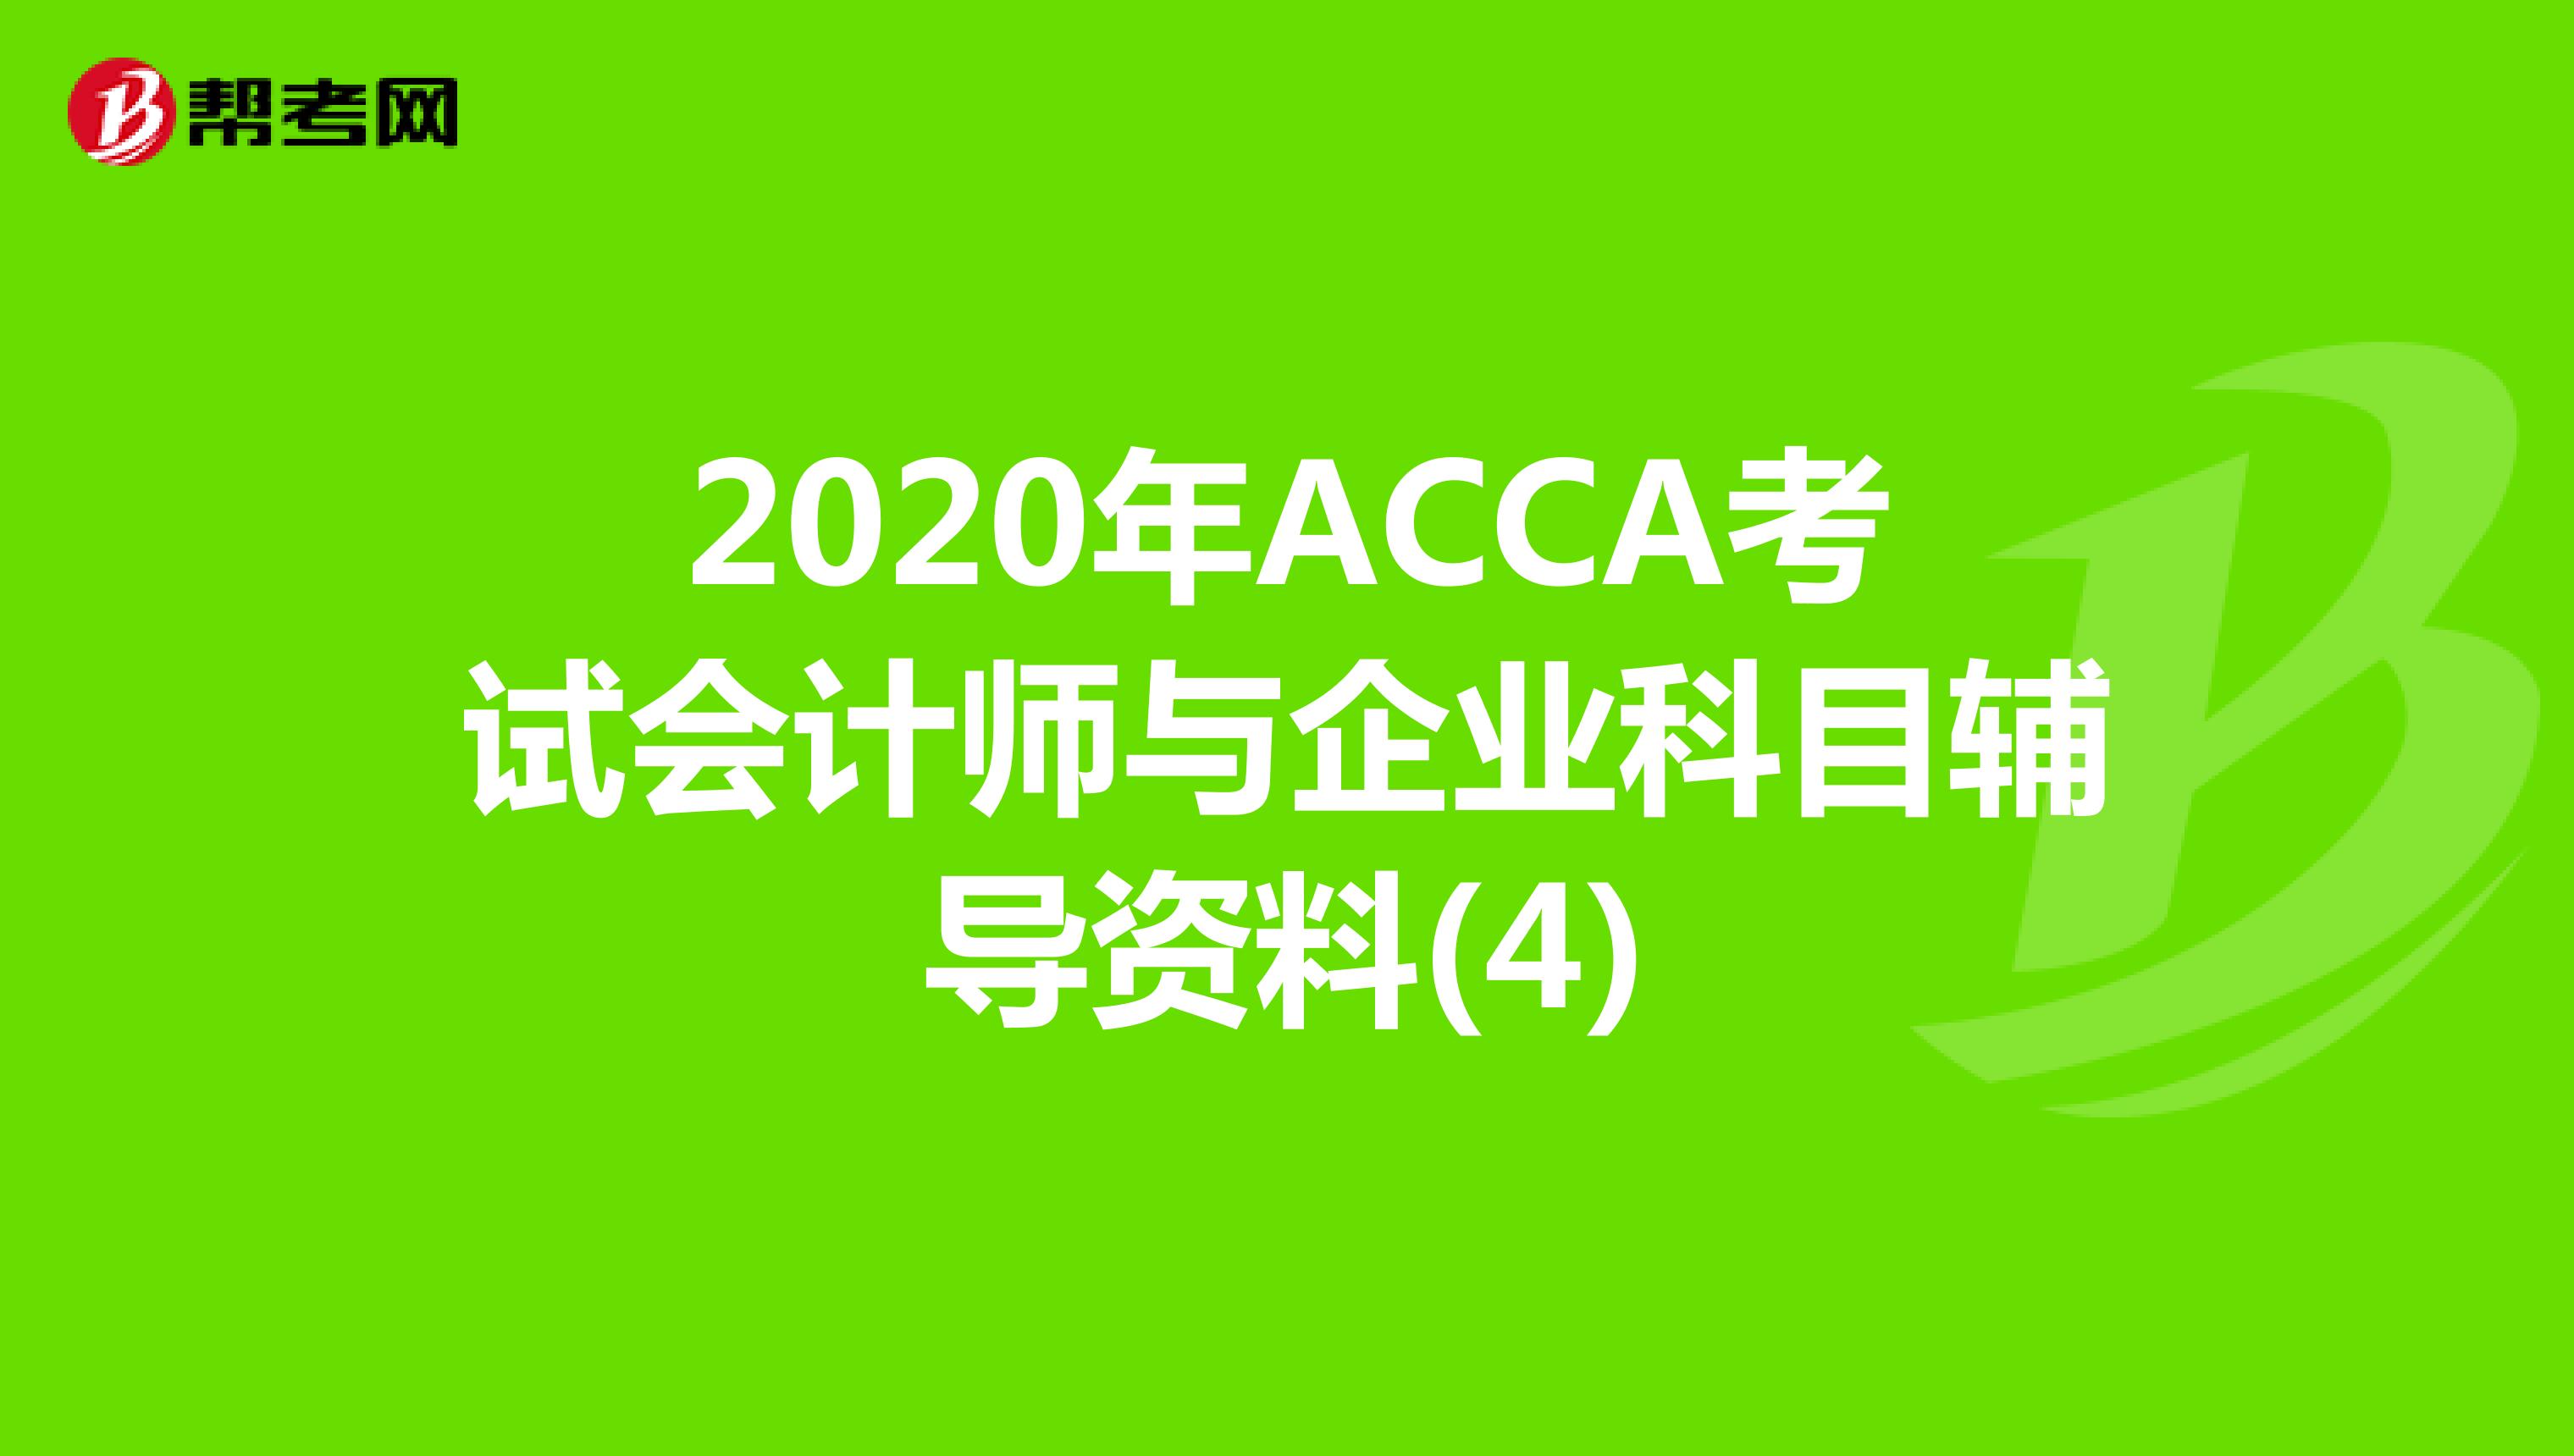 2020年ACCA考试会计师与企业科目辅导资料(4)